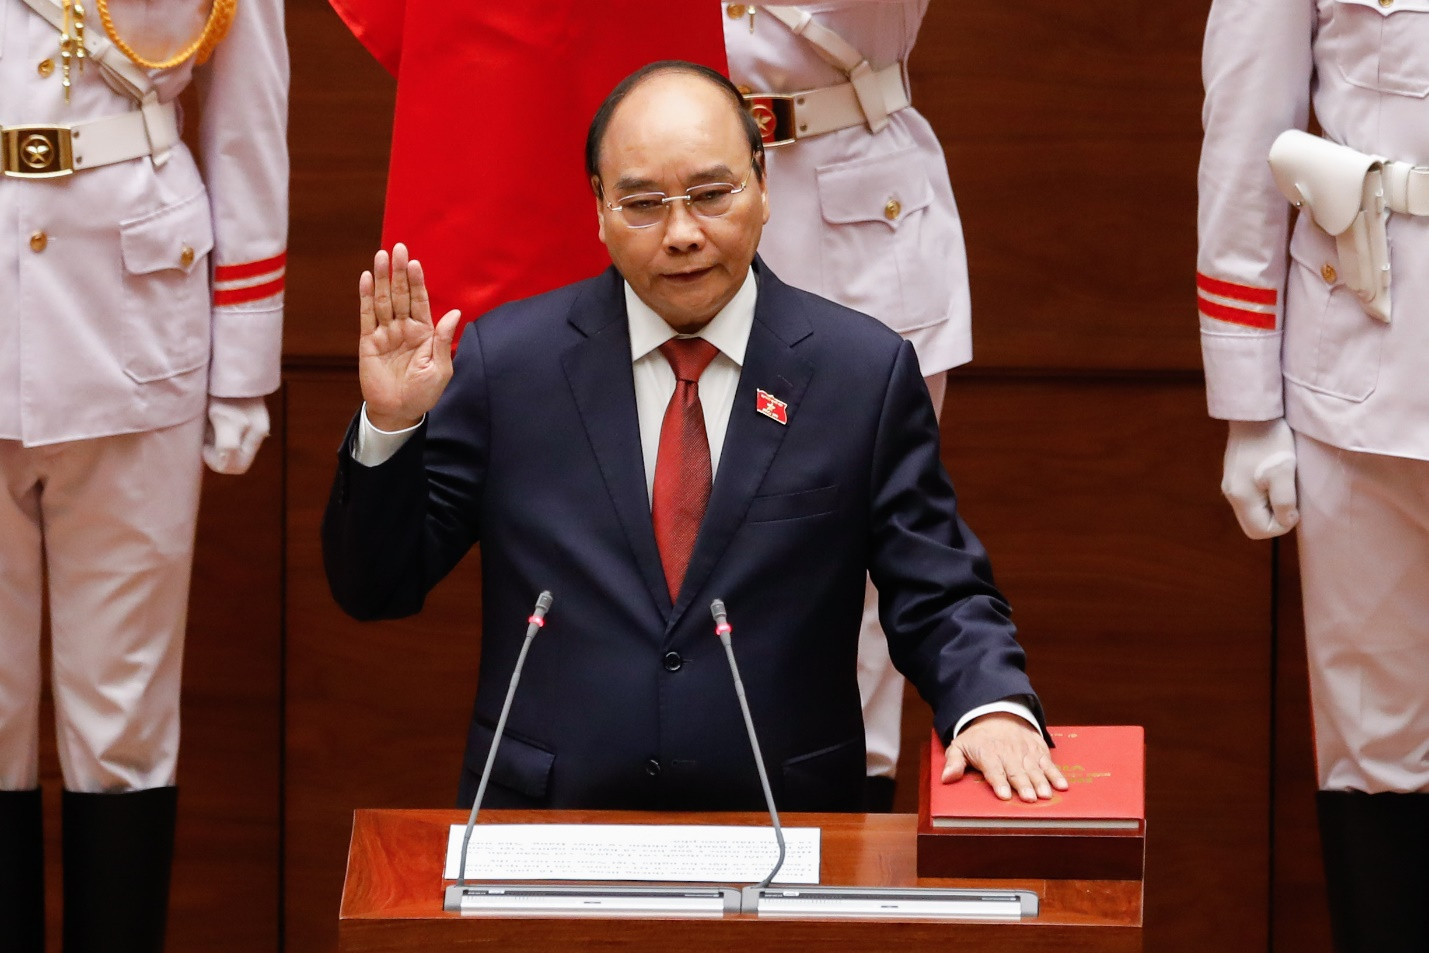 Đồng chí Nguyễn Xuân Phúc được Quốc hội bầu giữ chức Chủ tịch nước nhiệm kỳ 2021 - 2026 - Ảnh 1.